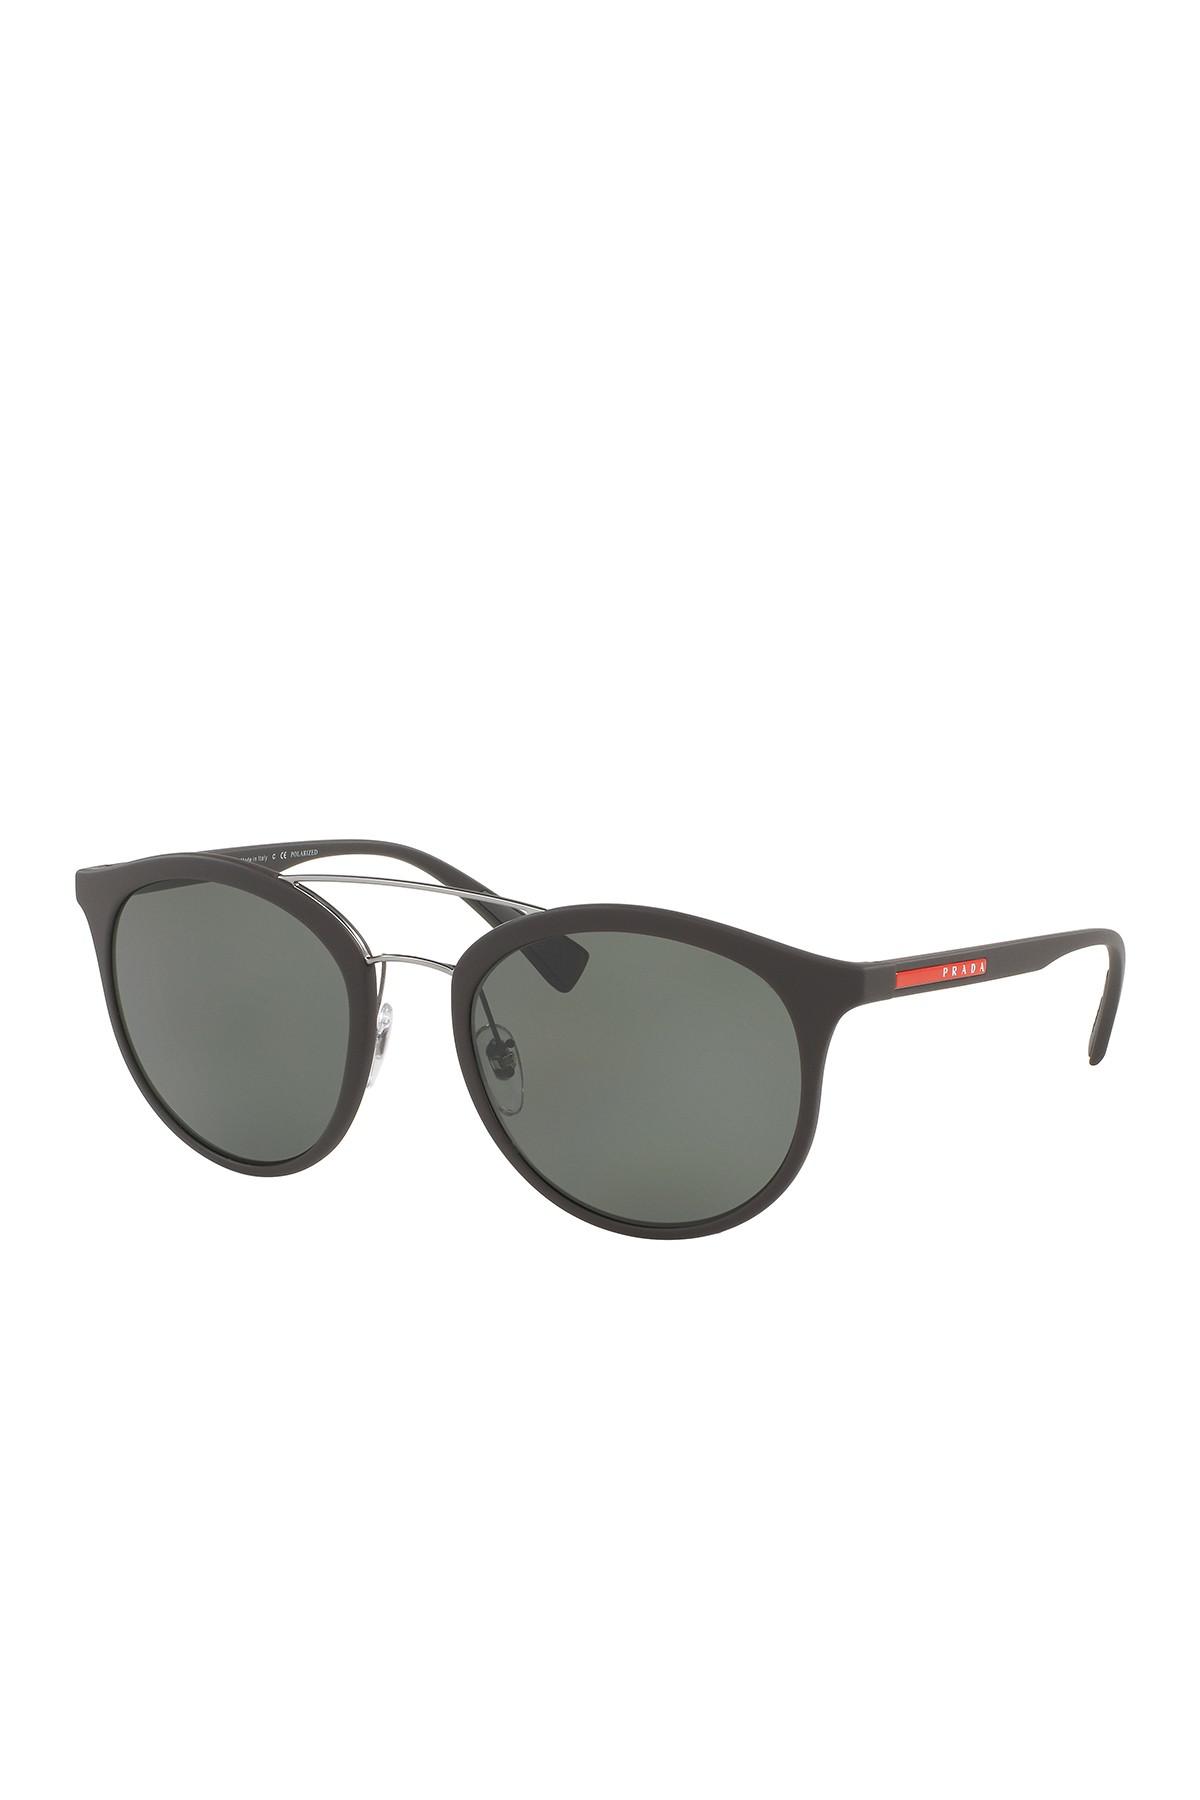 prada women's phantos 54mm sunglasses